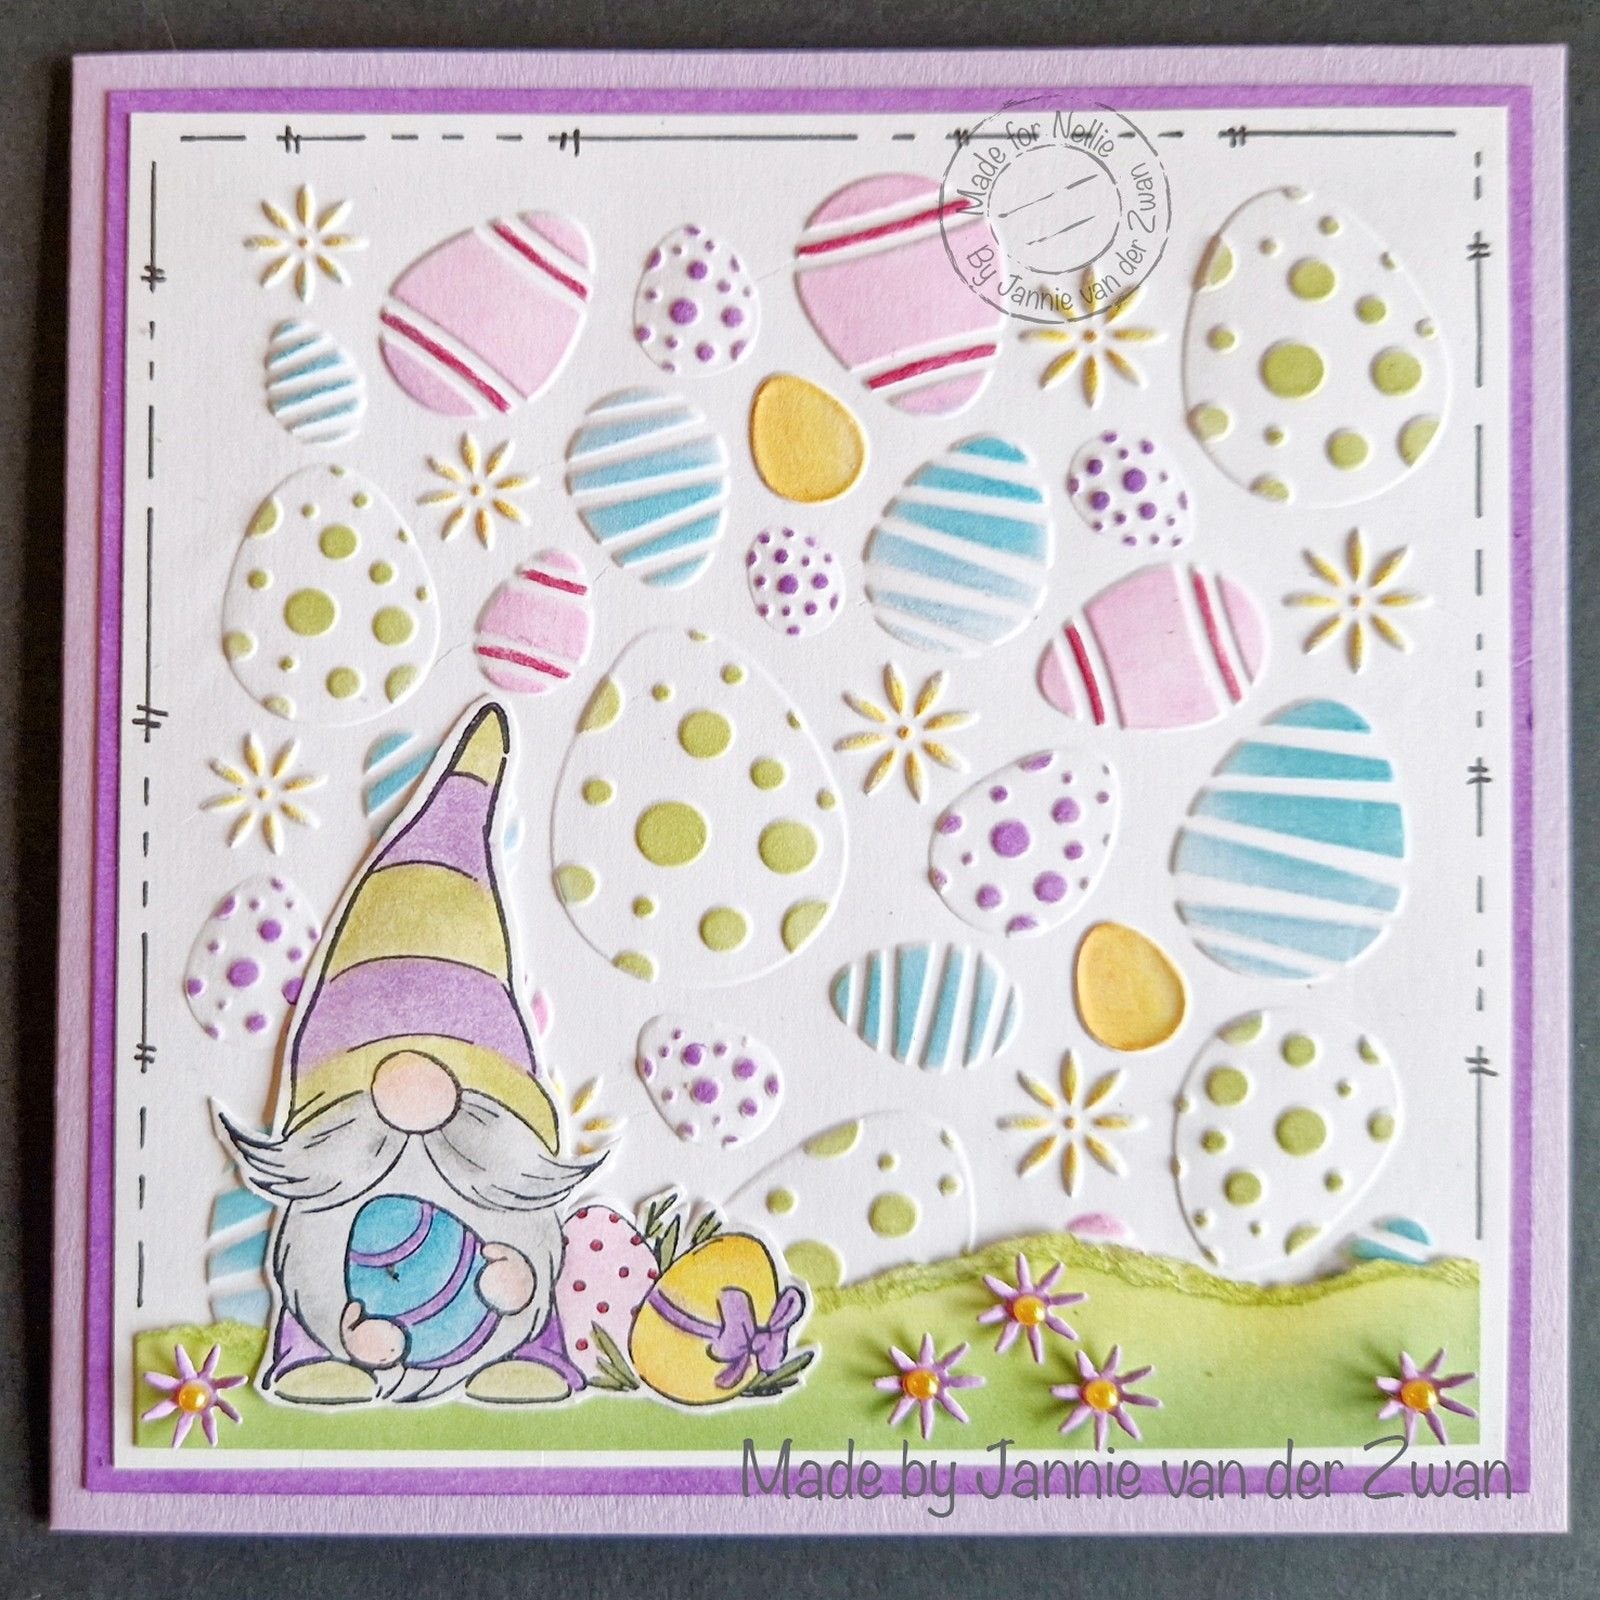 Nellie Snellen • 3D Embossing Folder Easter Eggs Background